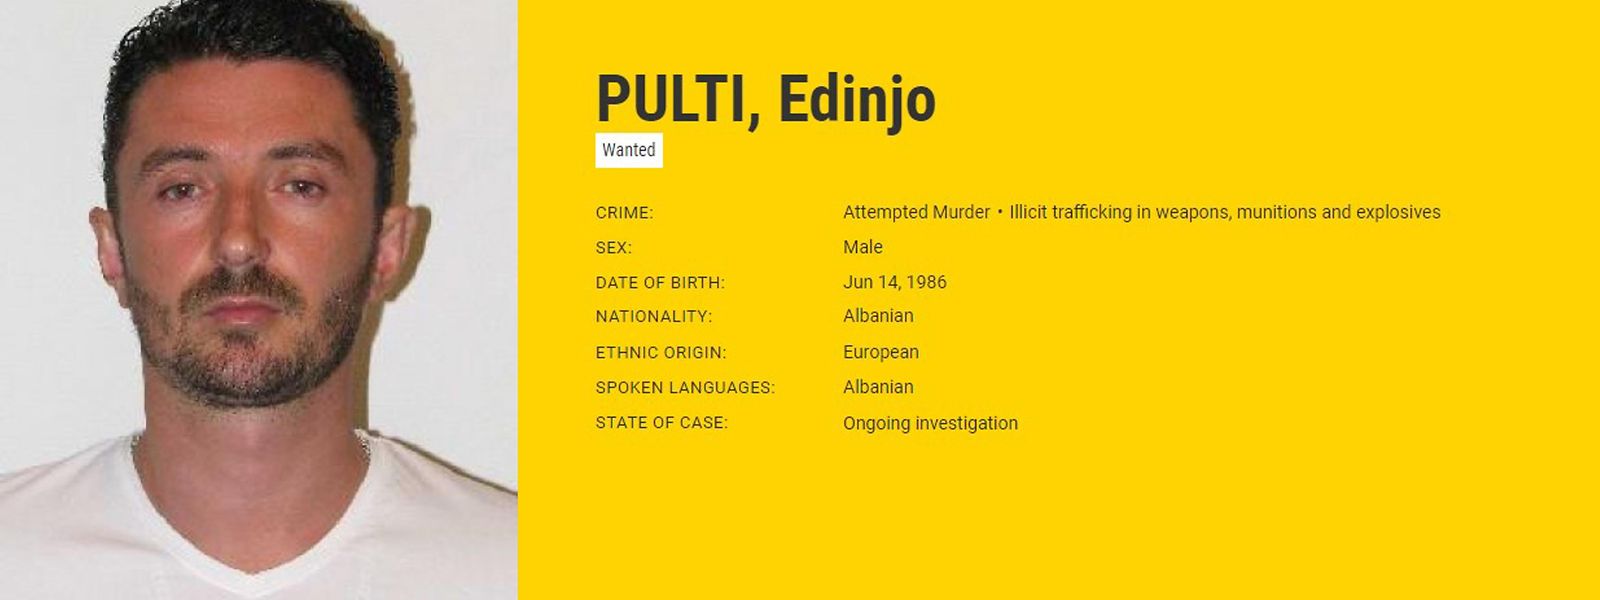 L'avis de recherche lancé contre Edinjo Pulti sur le site Internet d'Europol, qui recense les criminels les plus recherchés d'Europe, est toujours d'actualité. 